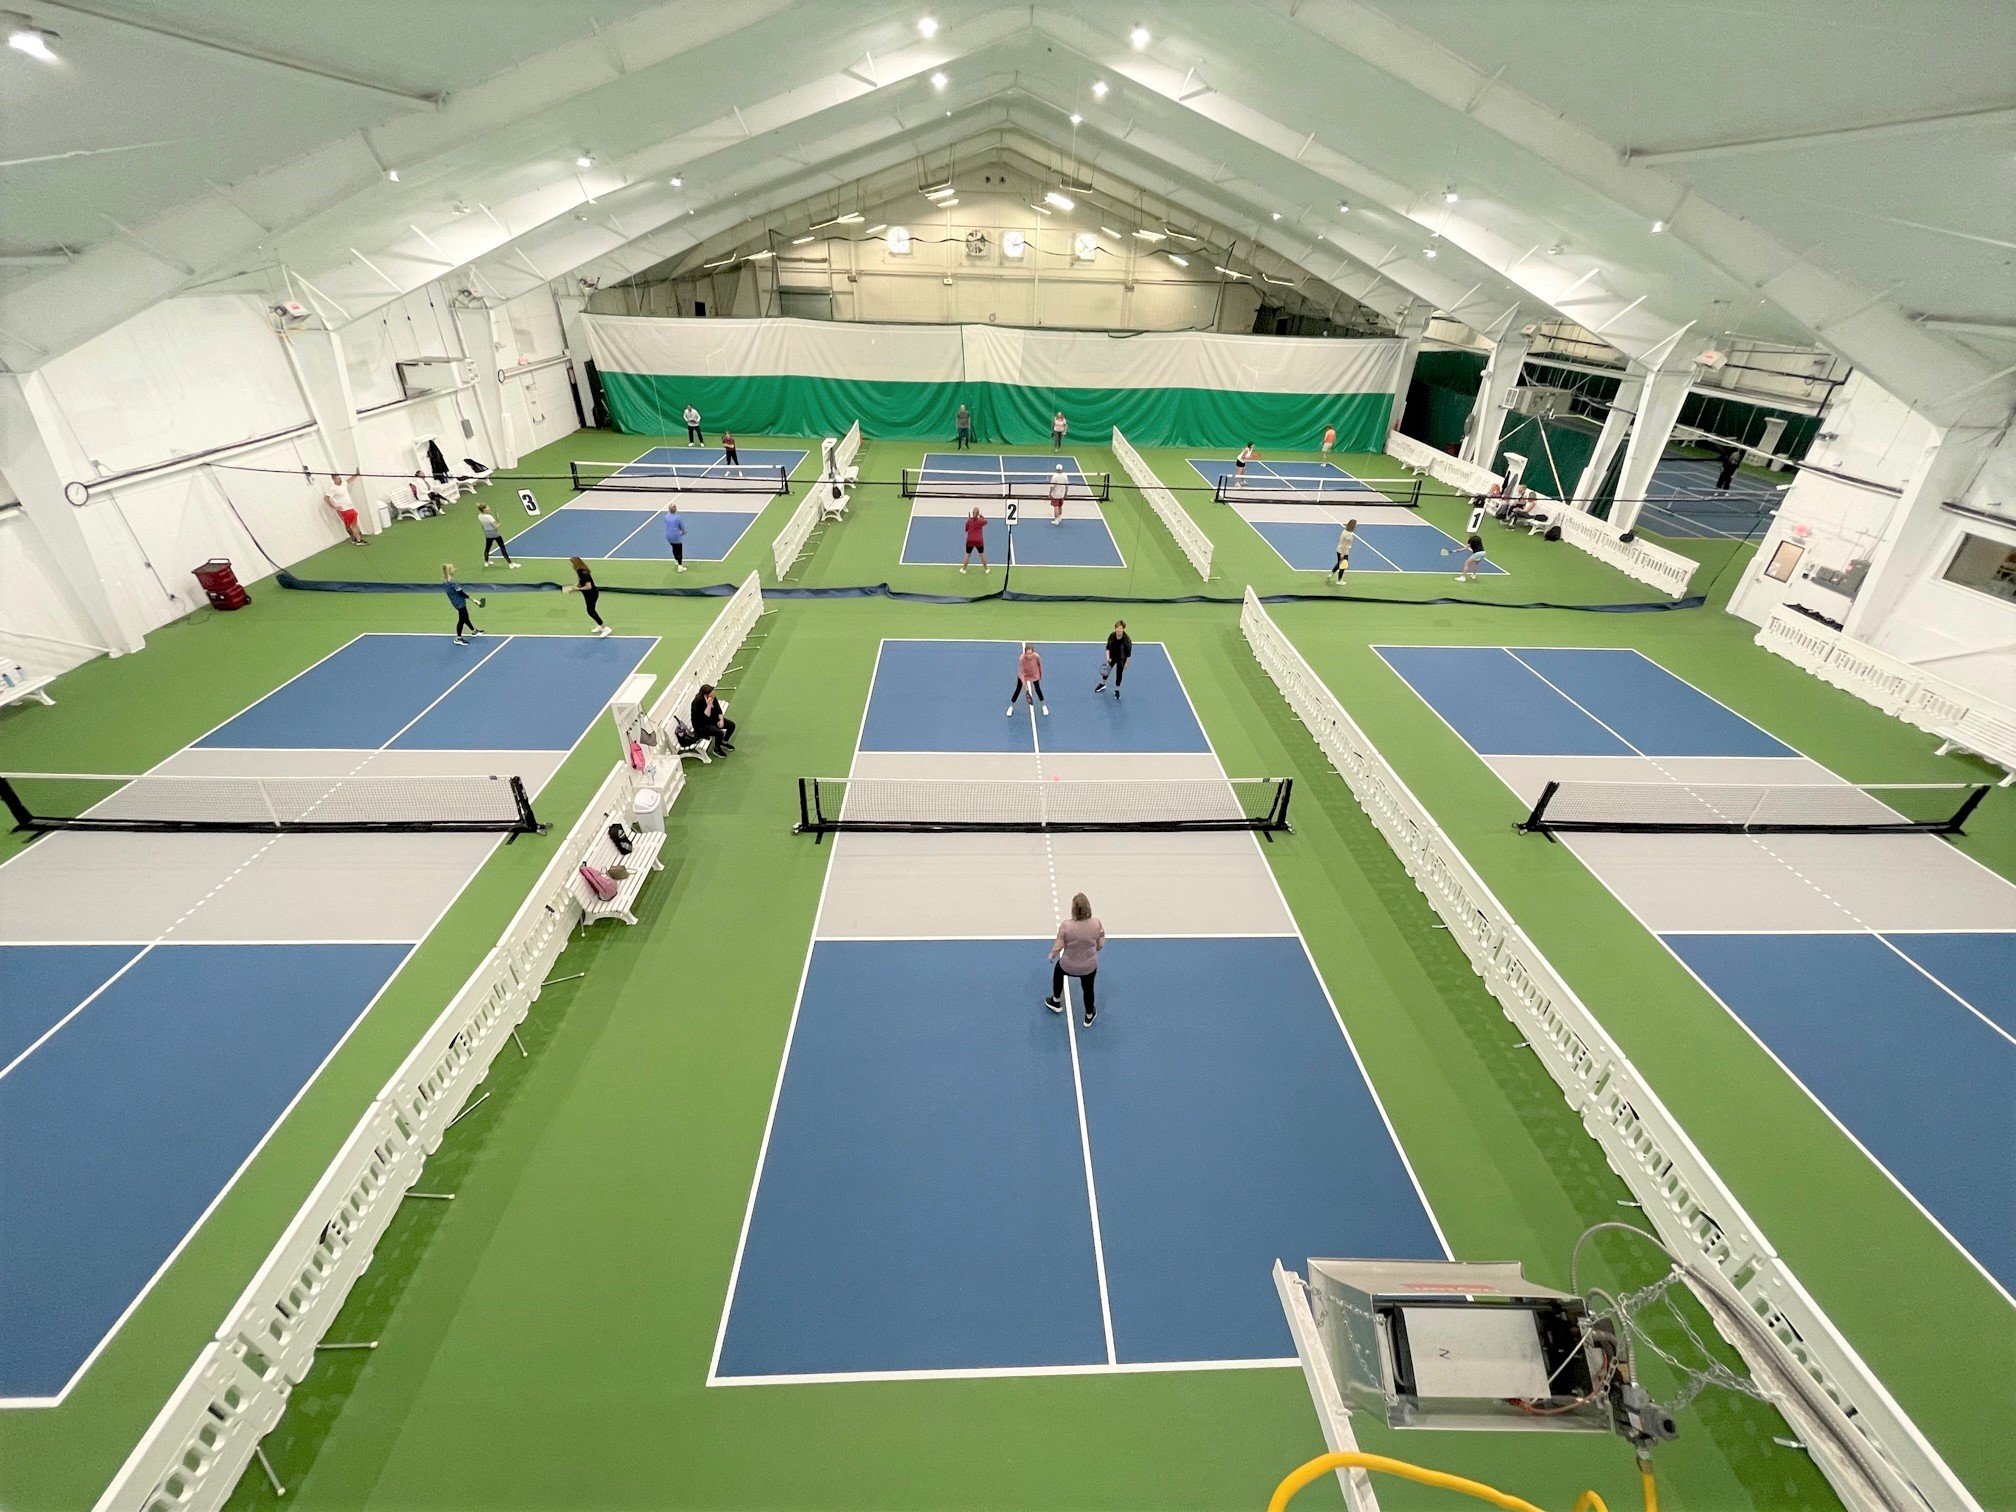 Indoor Pickleball court design